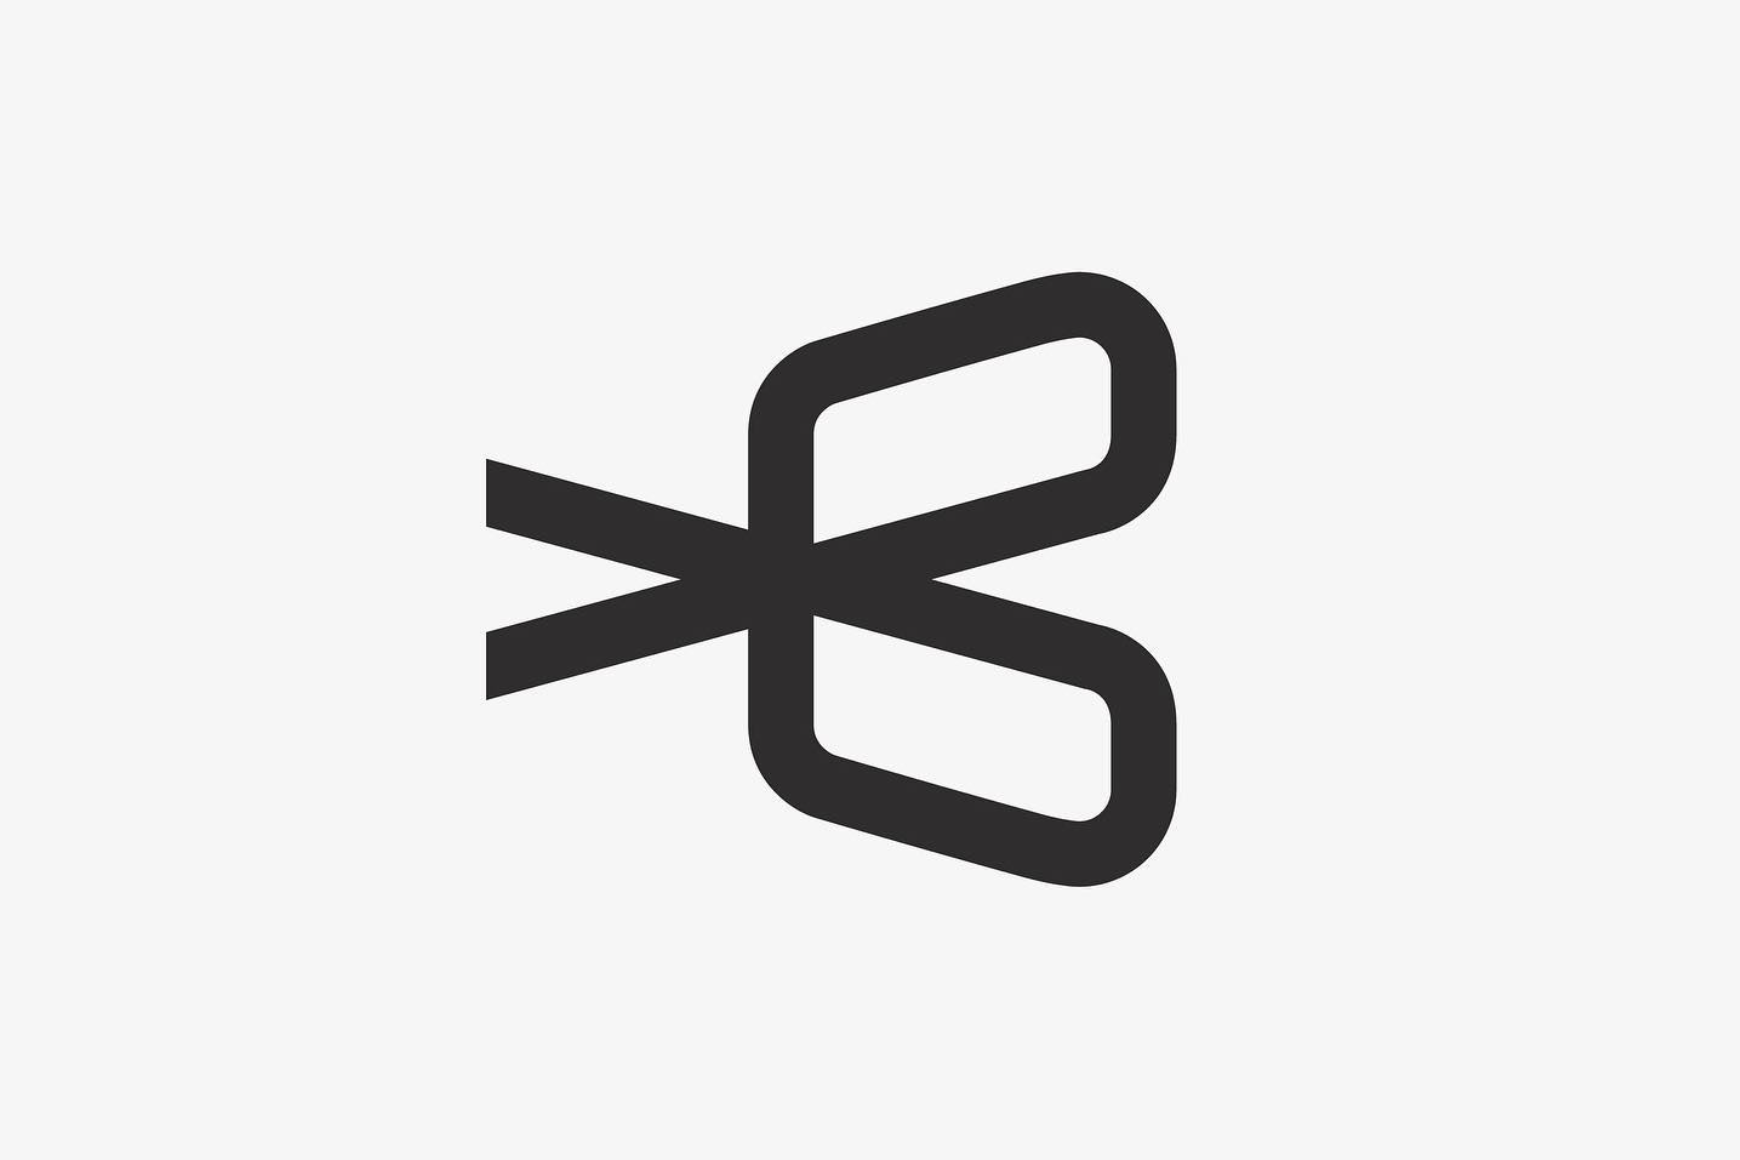 Logokonzept aus dem Buchstaben B und einer symbolischen Schere.